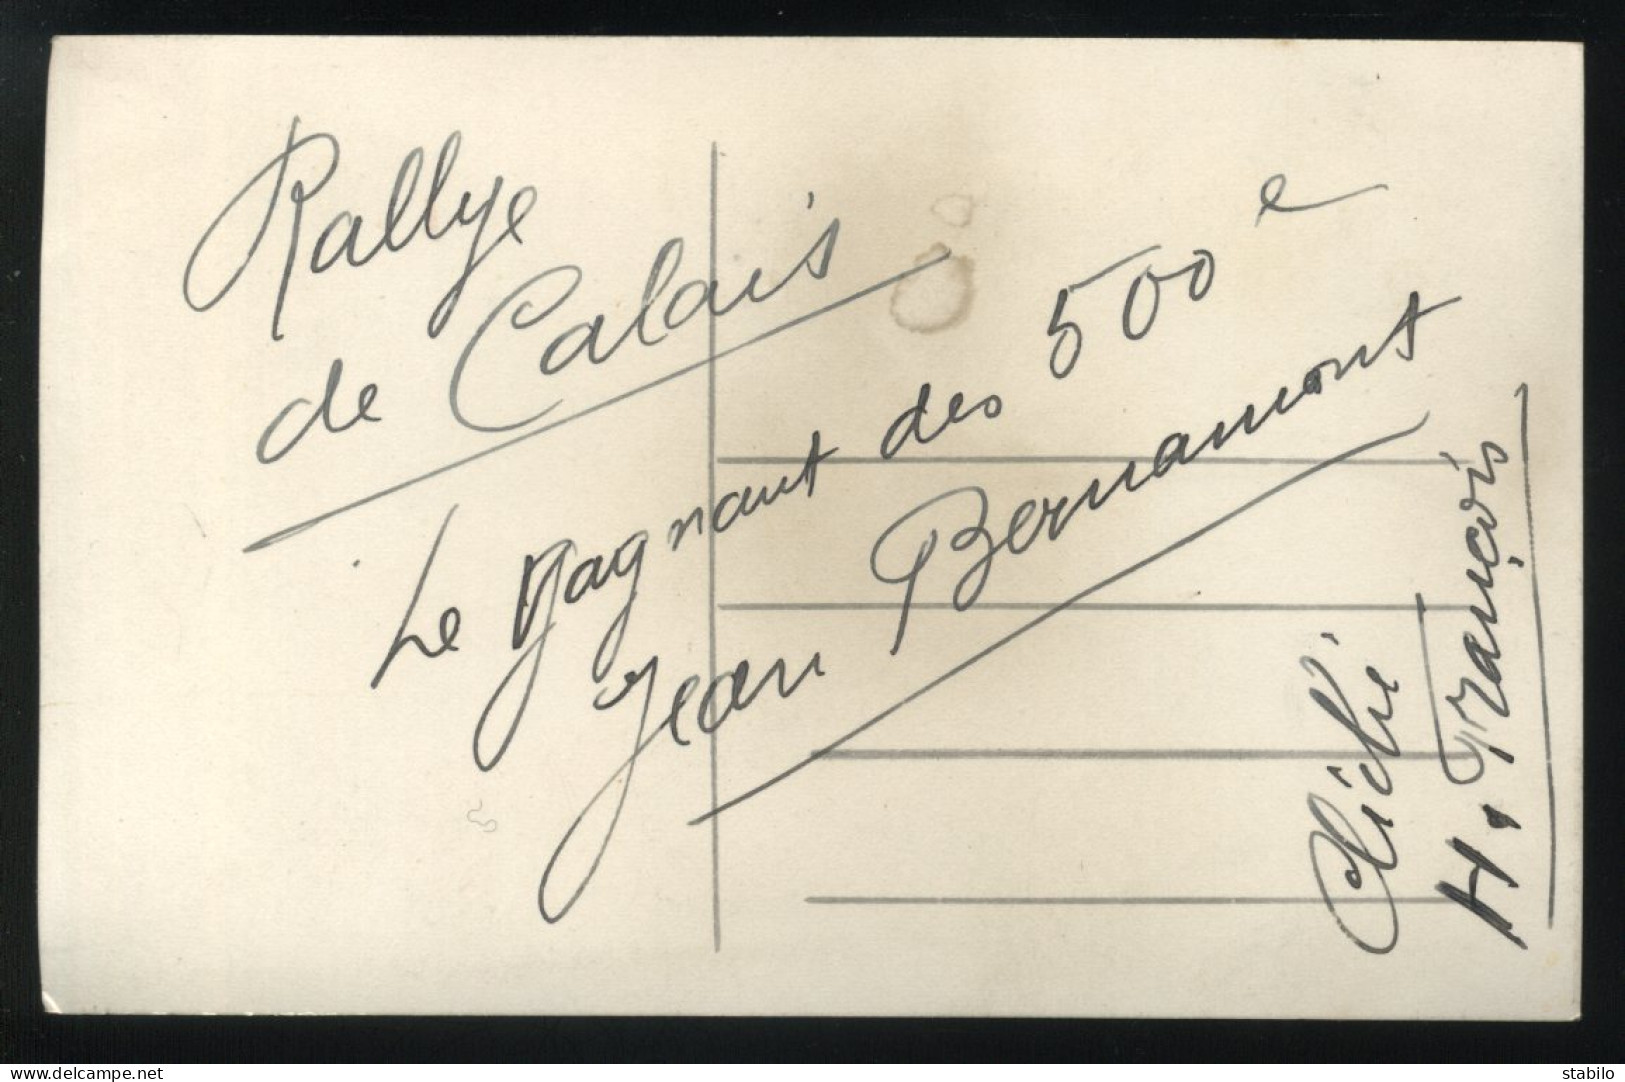 62 - CALAIS - RALLYE CYCLISTE 1936 - LE GAGNANT JEAN BERNAMONT - CARTE PHOTO ORIGINALE - Calais